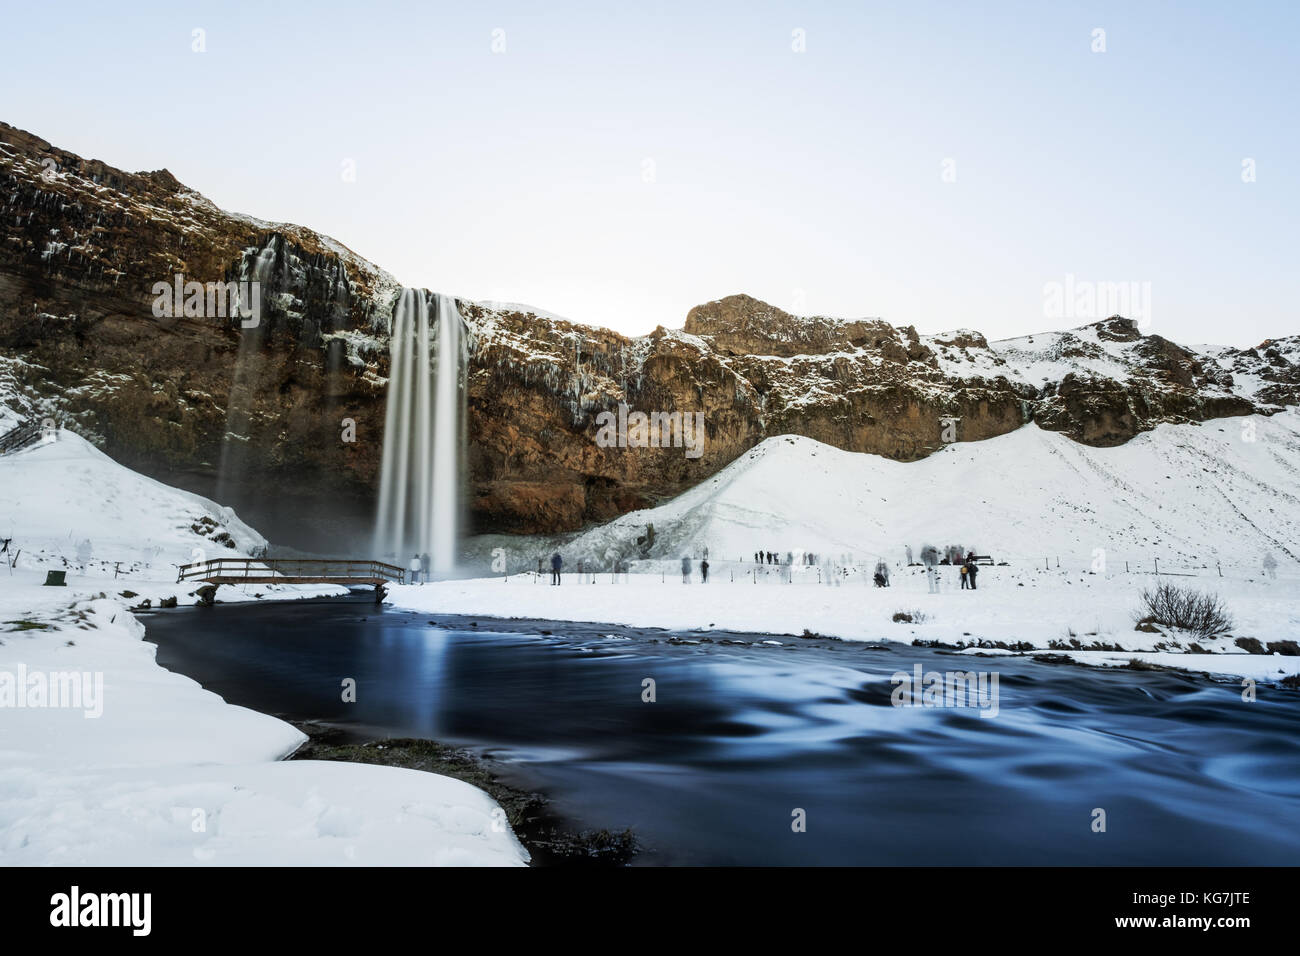 Cascada paisaje en invierno. seljalandsfoss waterfall en invierno hito popular en Islandia Foto de stock